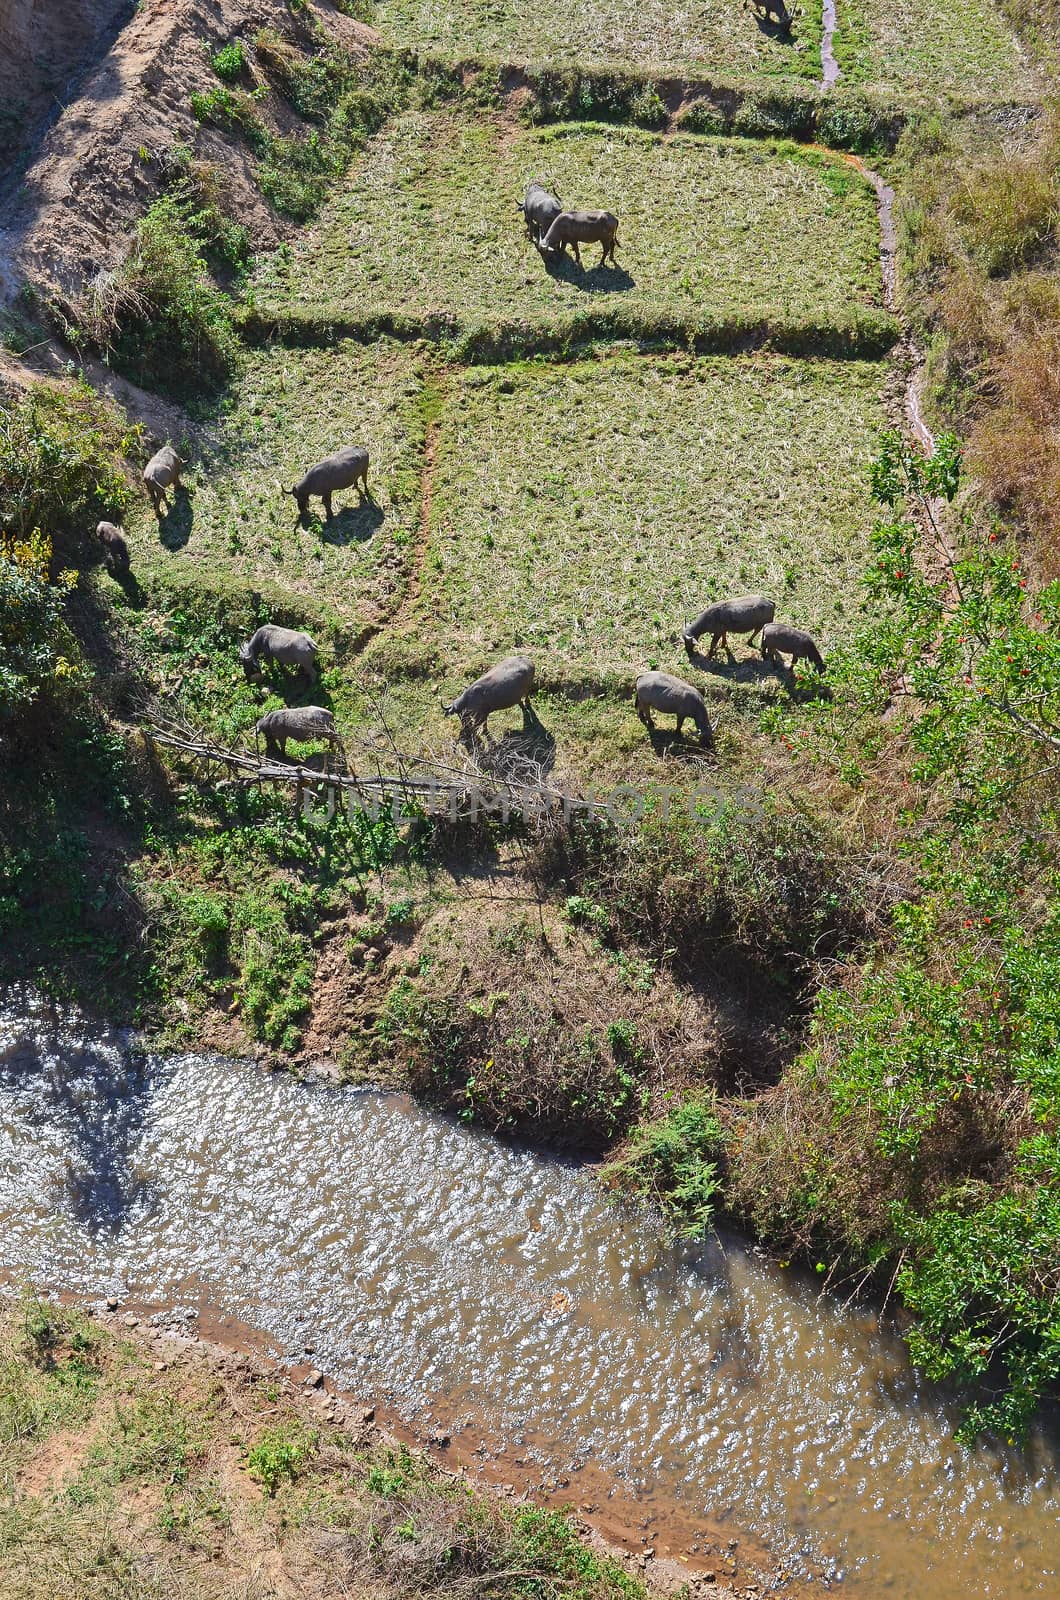 The buffalos graze on field beside the canal .